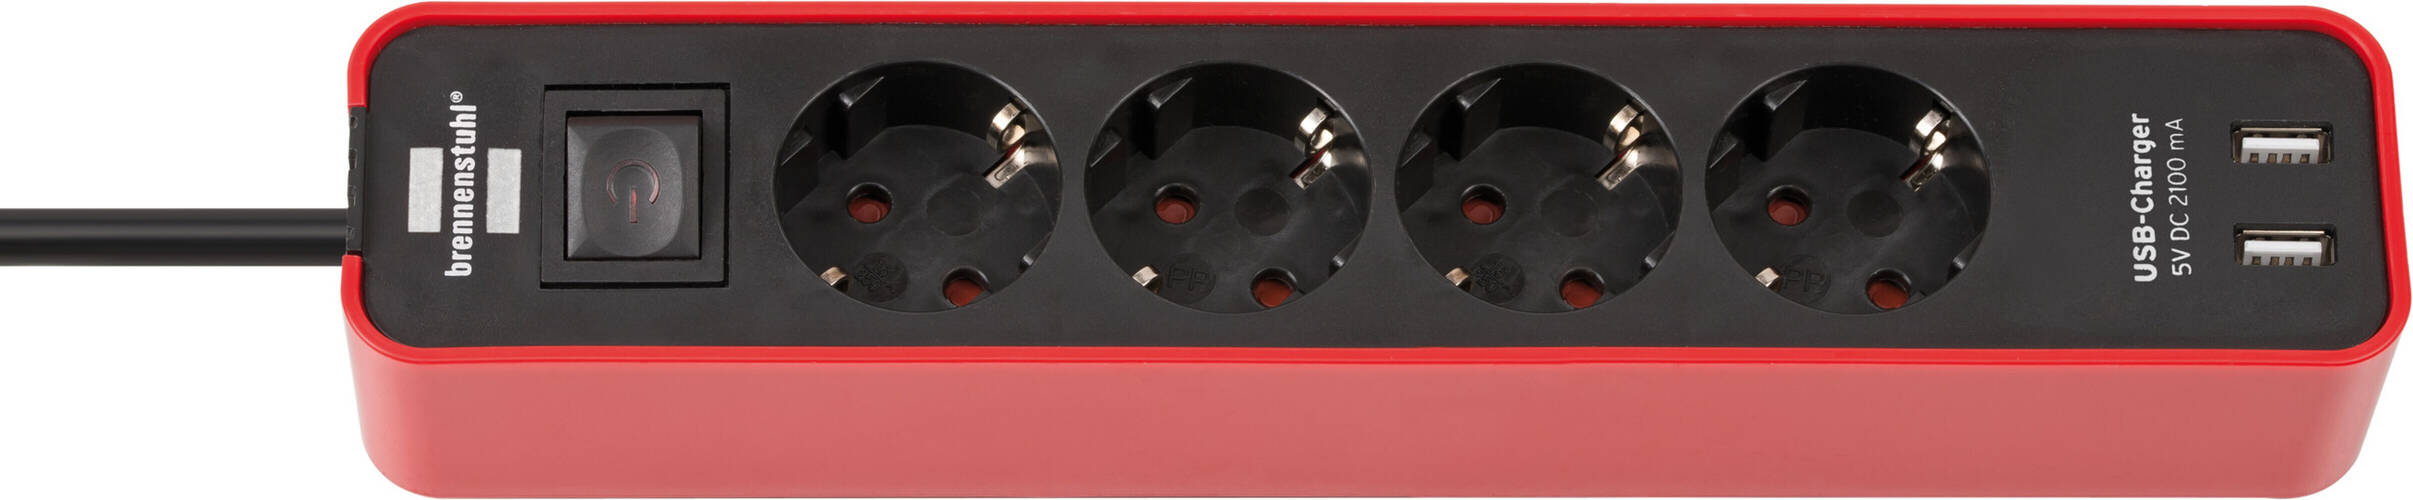 Brennenstuhl Ecolor Steckdosenleiste mit USB Ladefunktion 4 fach rot schwarz 1 5m H05VV F3G1 5 mit Schalter - LED Universum